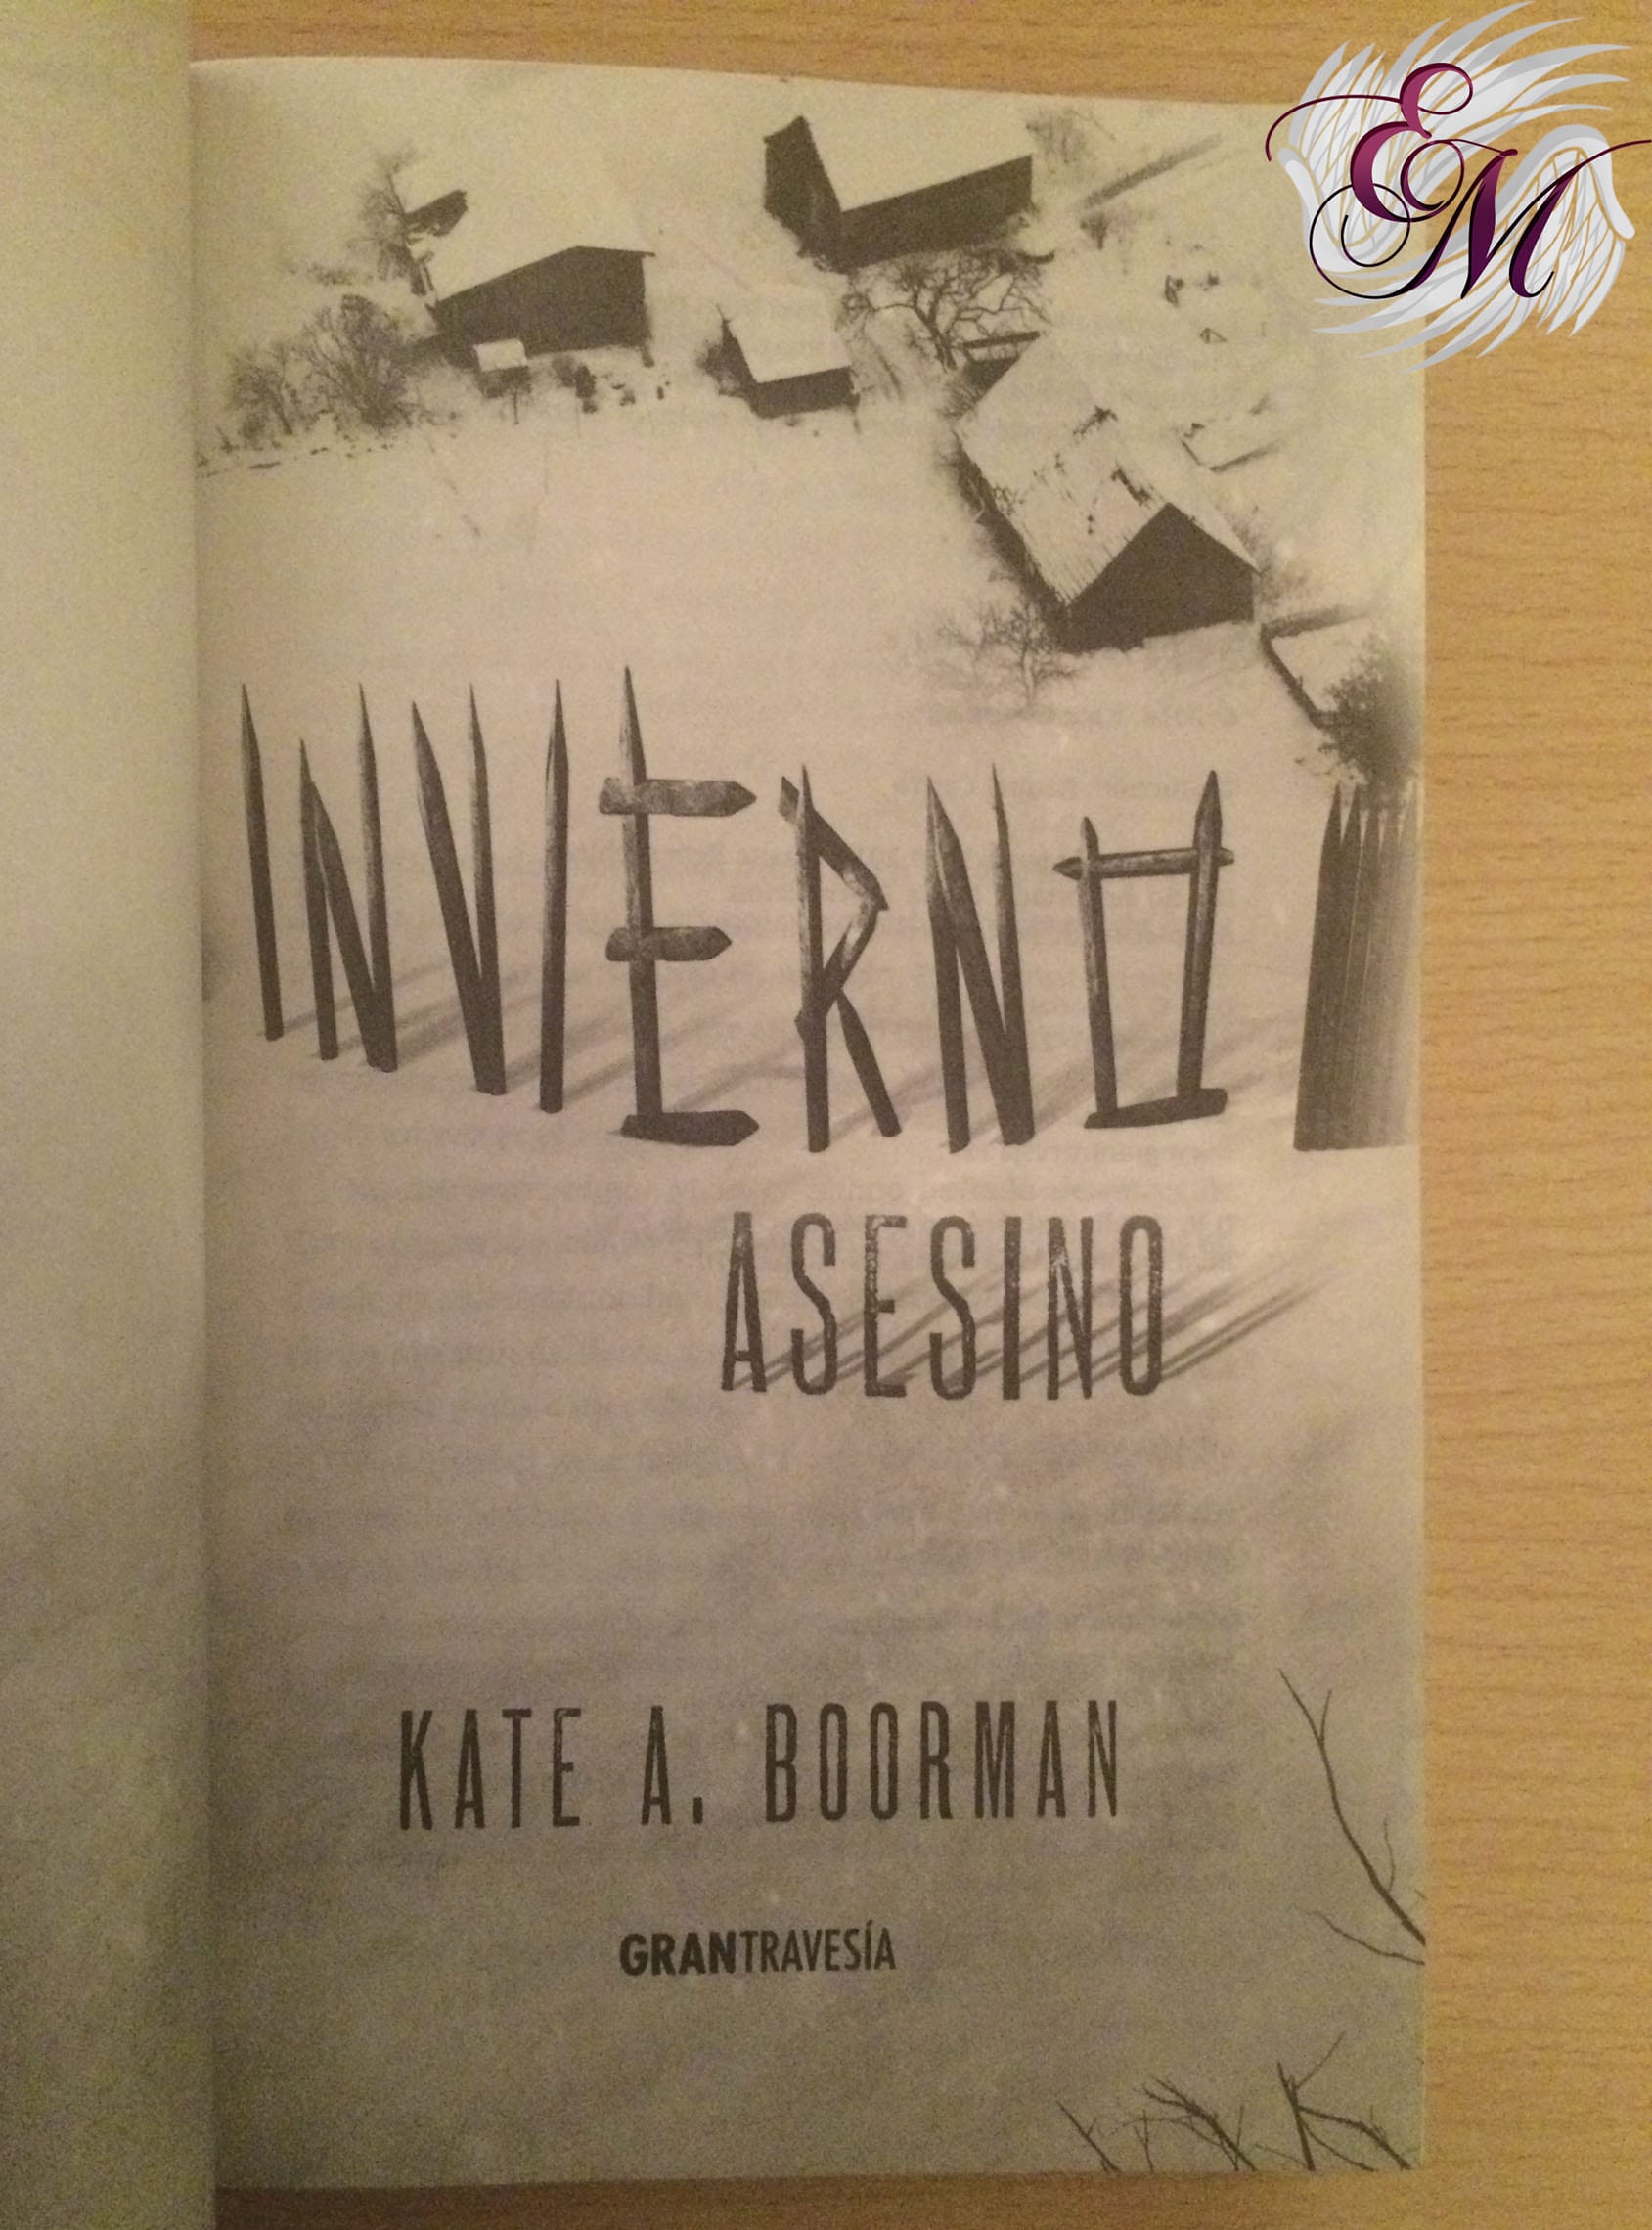 Invierno asesino, de Kate A. Boorman - Reseña